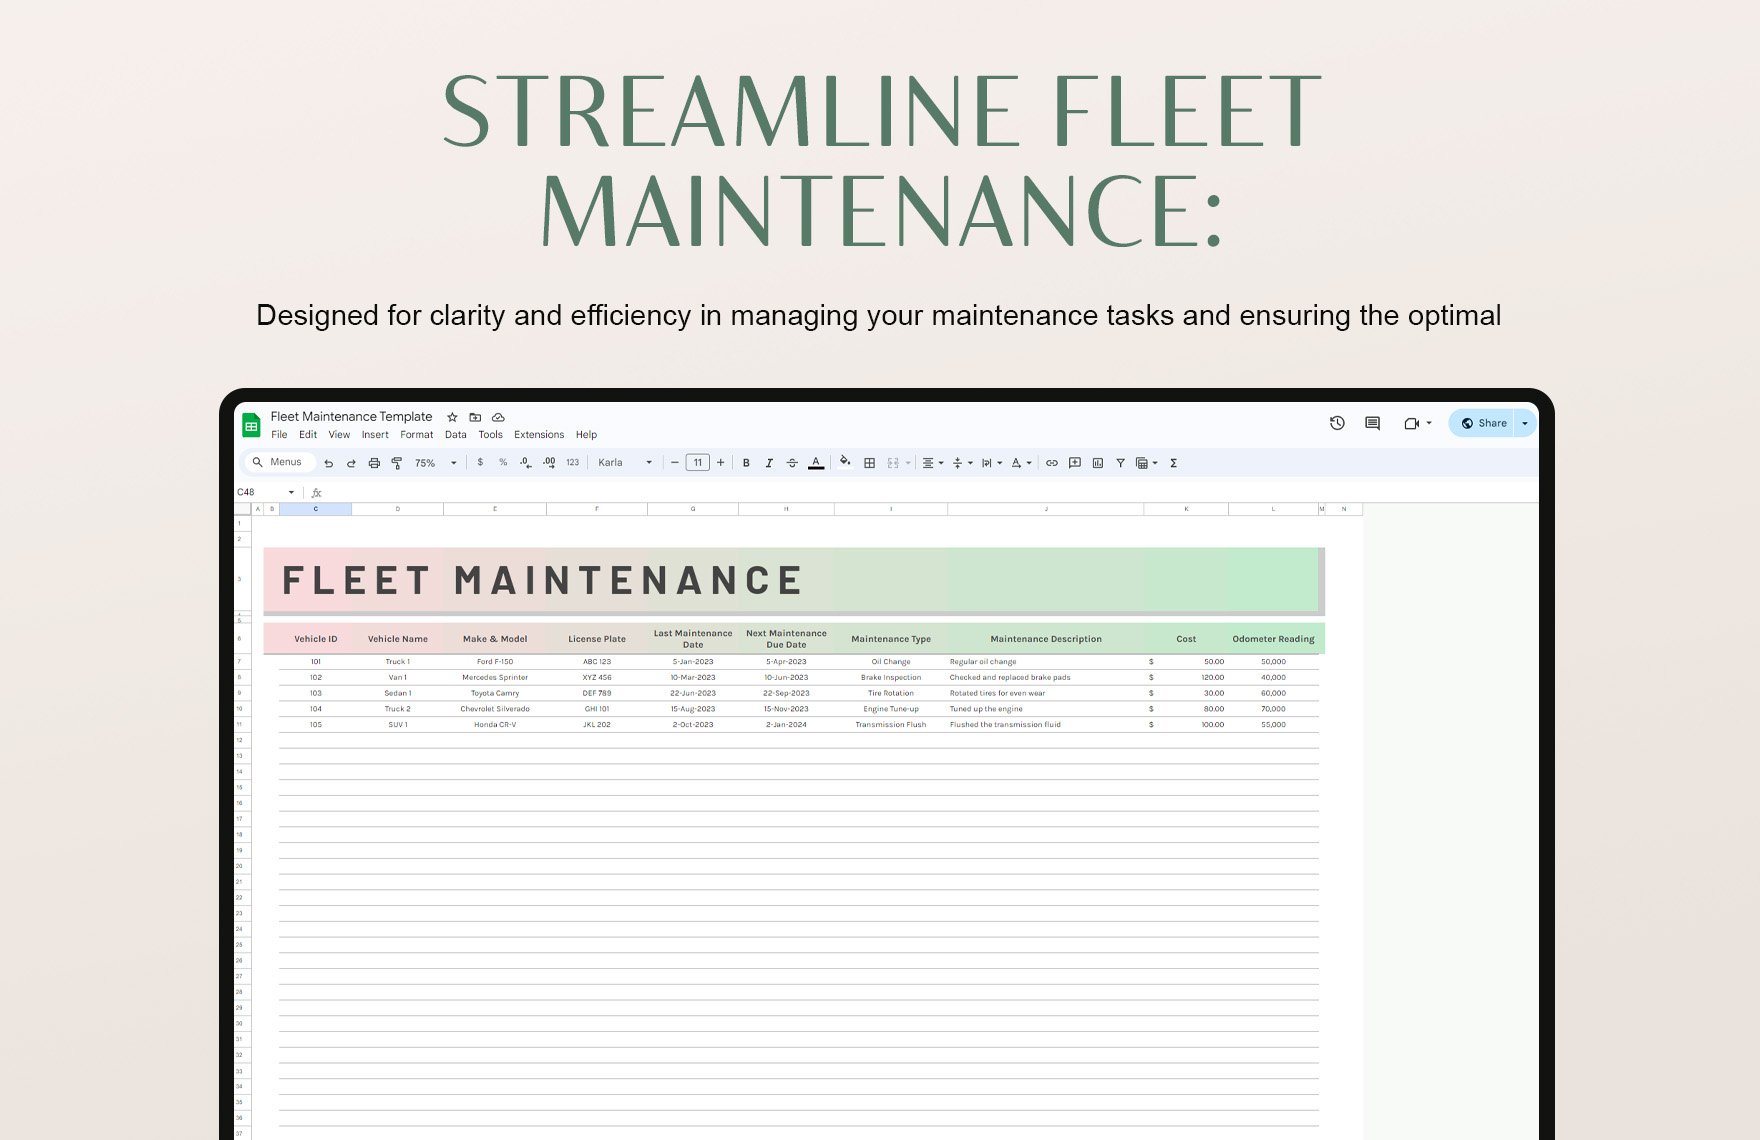 Fleet Maintenance Template